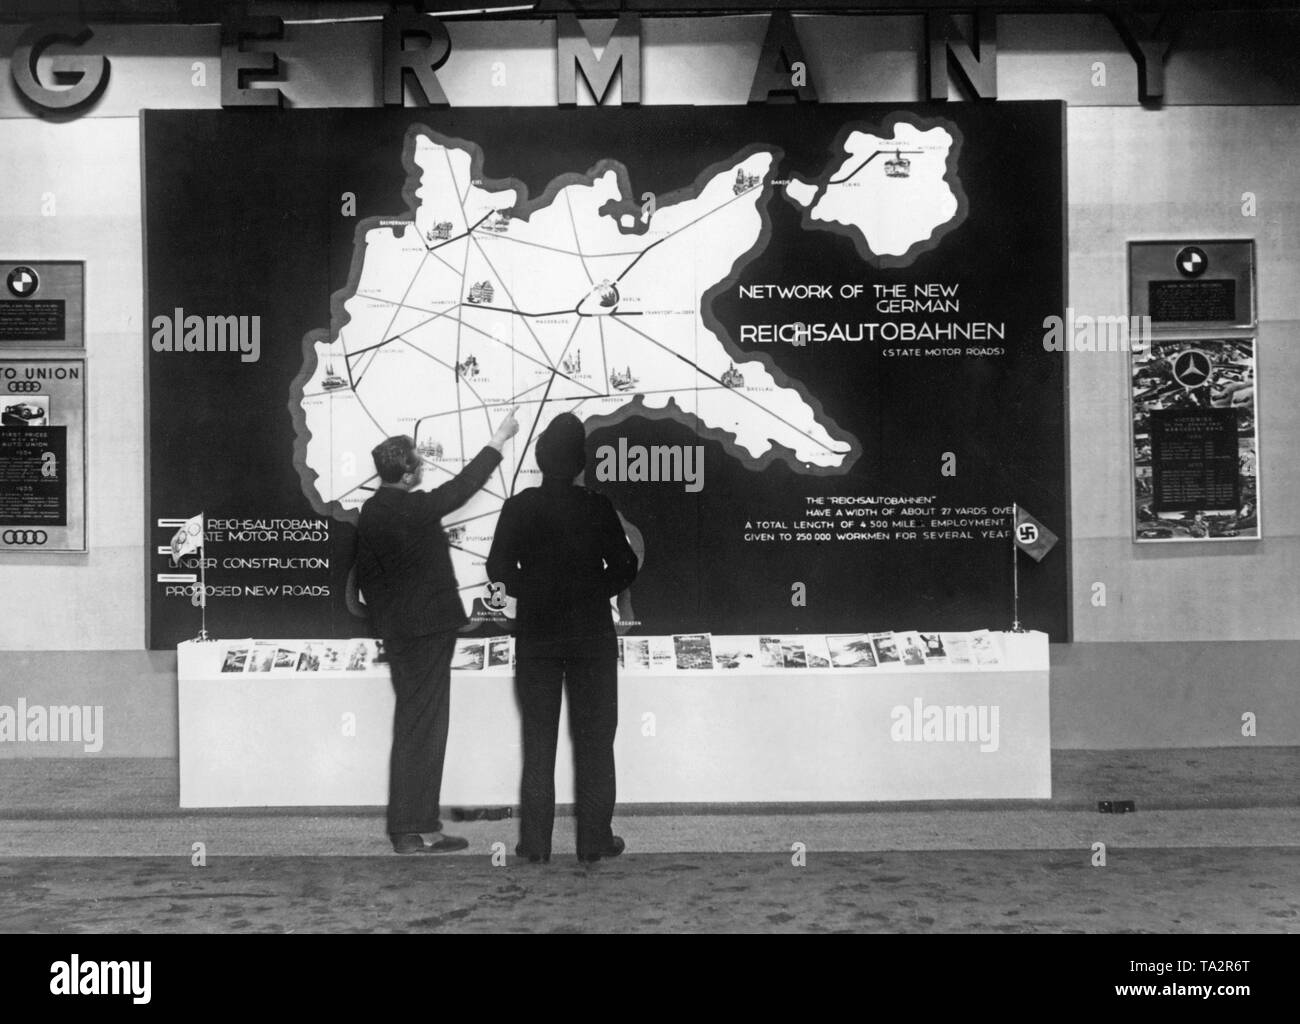 L'Reichsbahnzentrale für den deutschen Reiseverkehrwill présente une carte générale du réseau autoroutier allemand sur leur stand au Salon de l'auto à l'Olympia de Londres. Banque D'Images